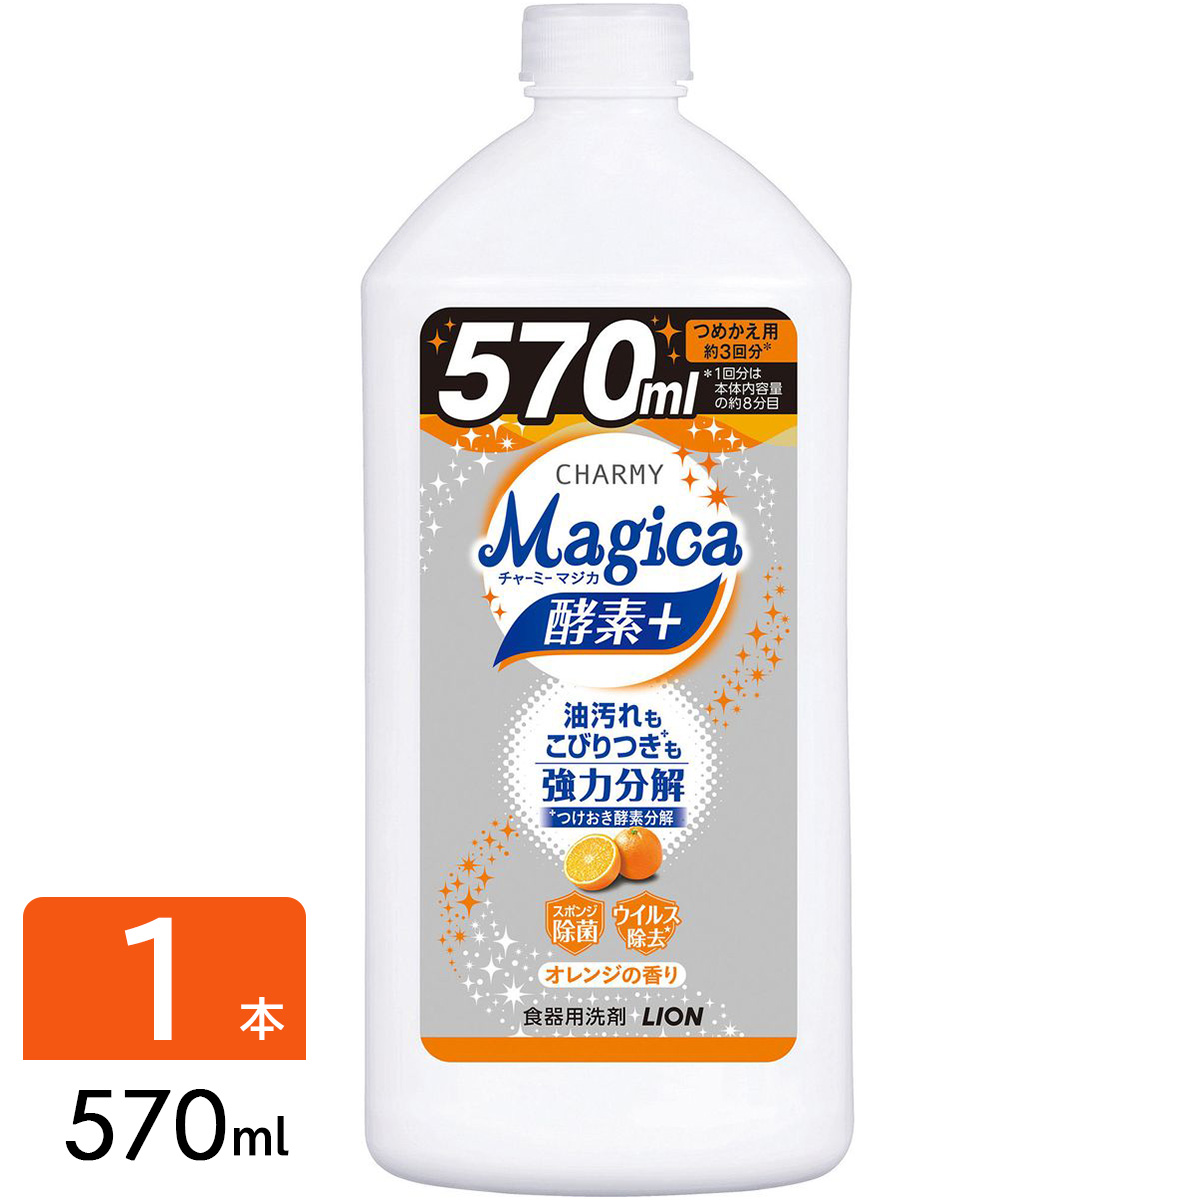 CHARMY チャーミー Magica マジカ 酵素+ フルーティオレンジ 食器用洗剤 詰め替え 570ml